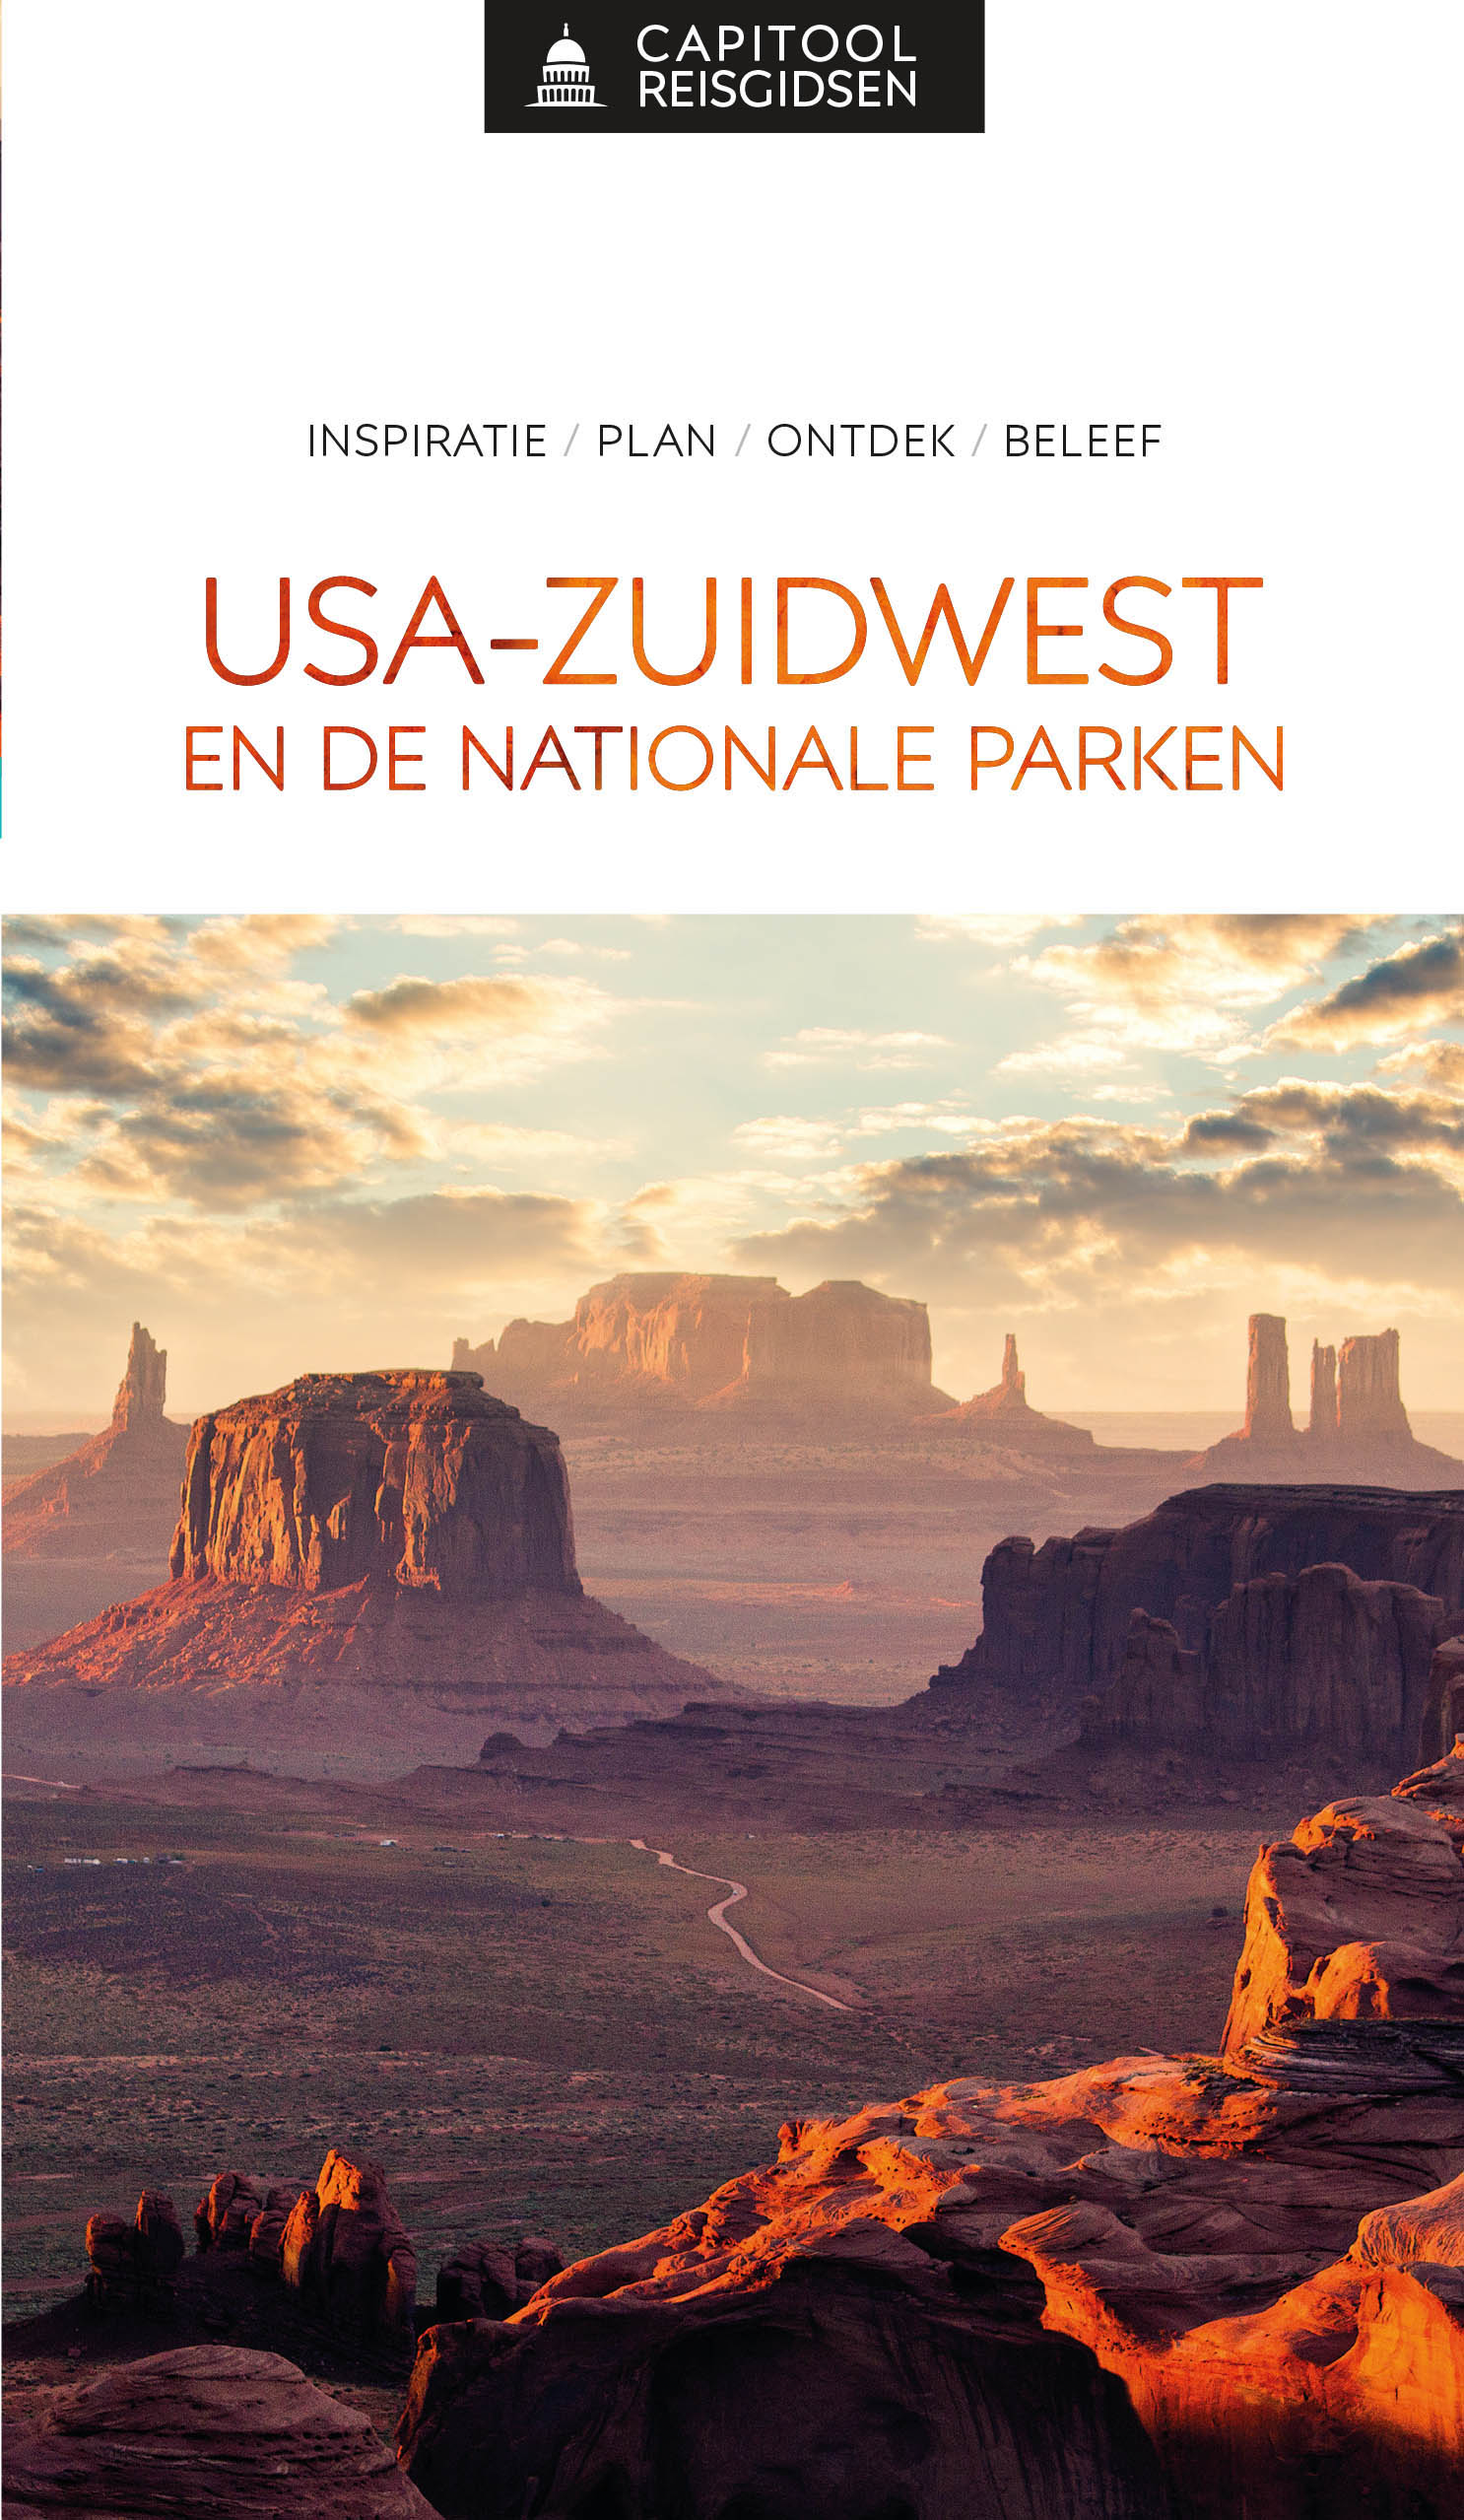 USA -Zuidwest en de Nationale parken